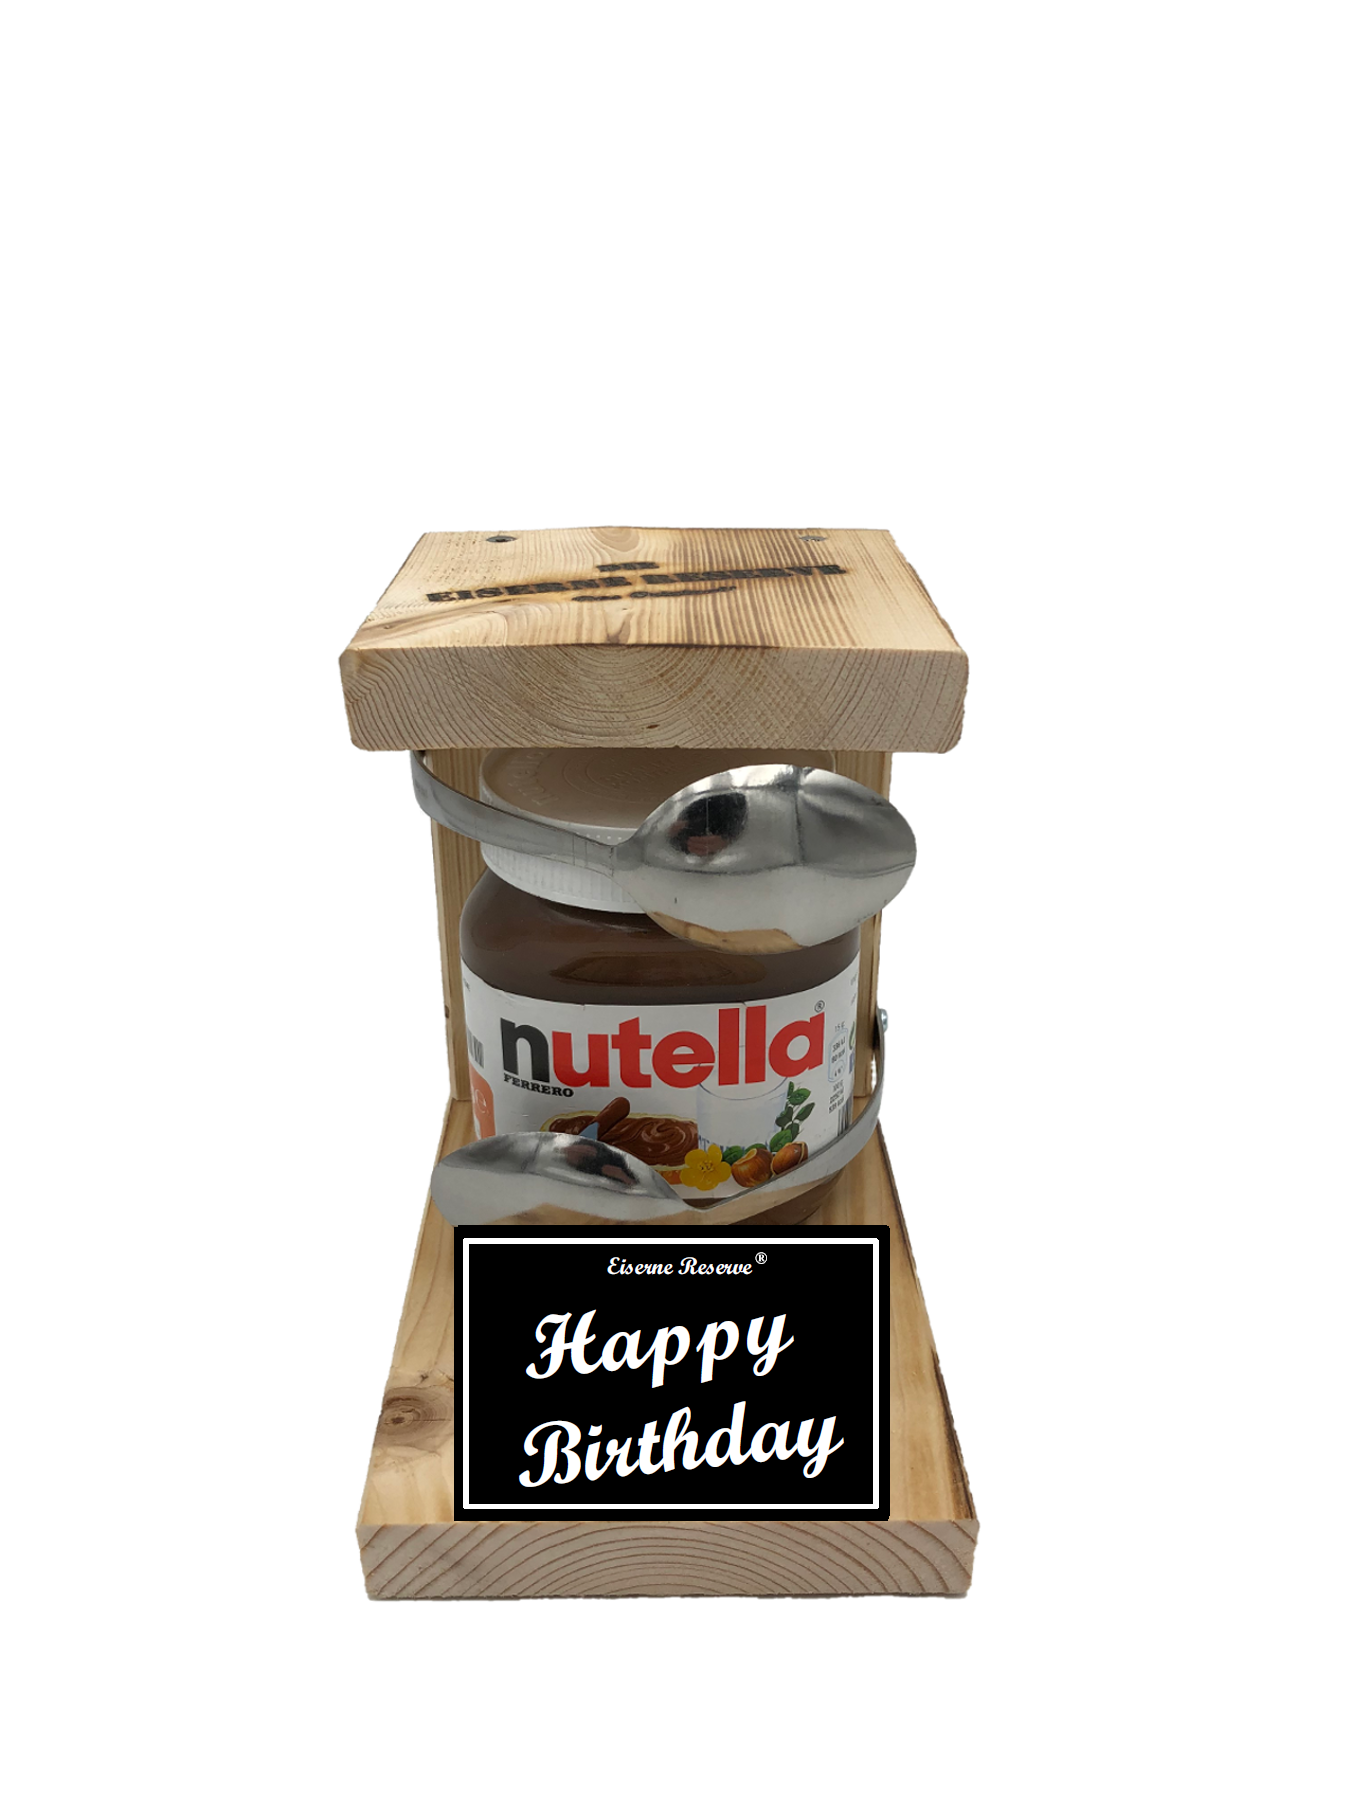 Happy Birthday Löffel Nutella Geschenk - Die Nutella Geschenkidee